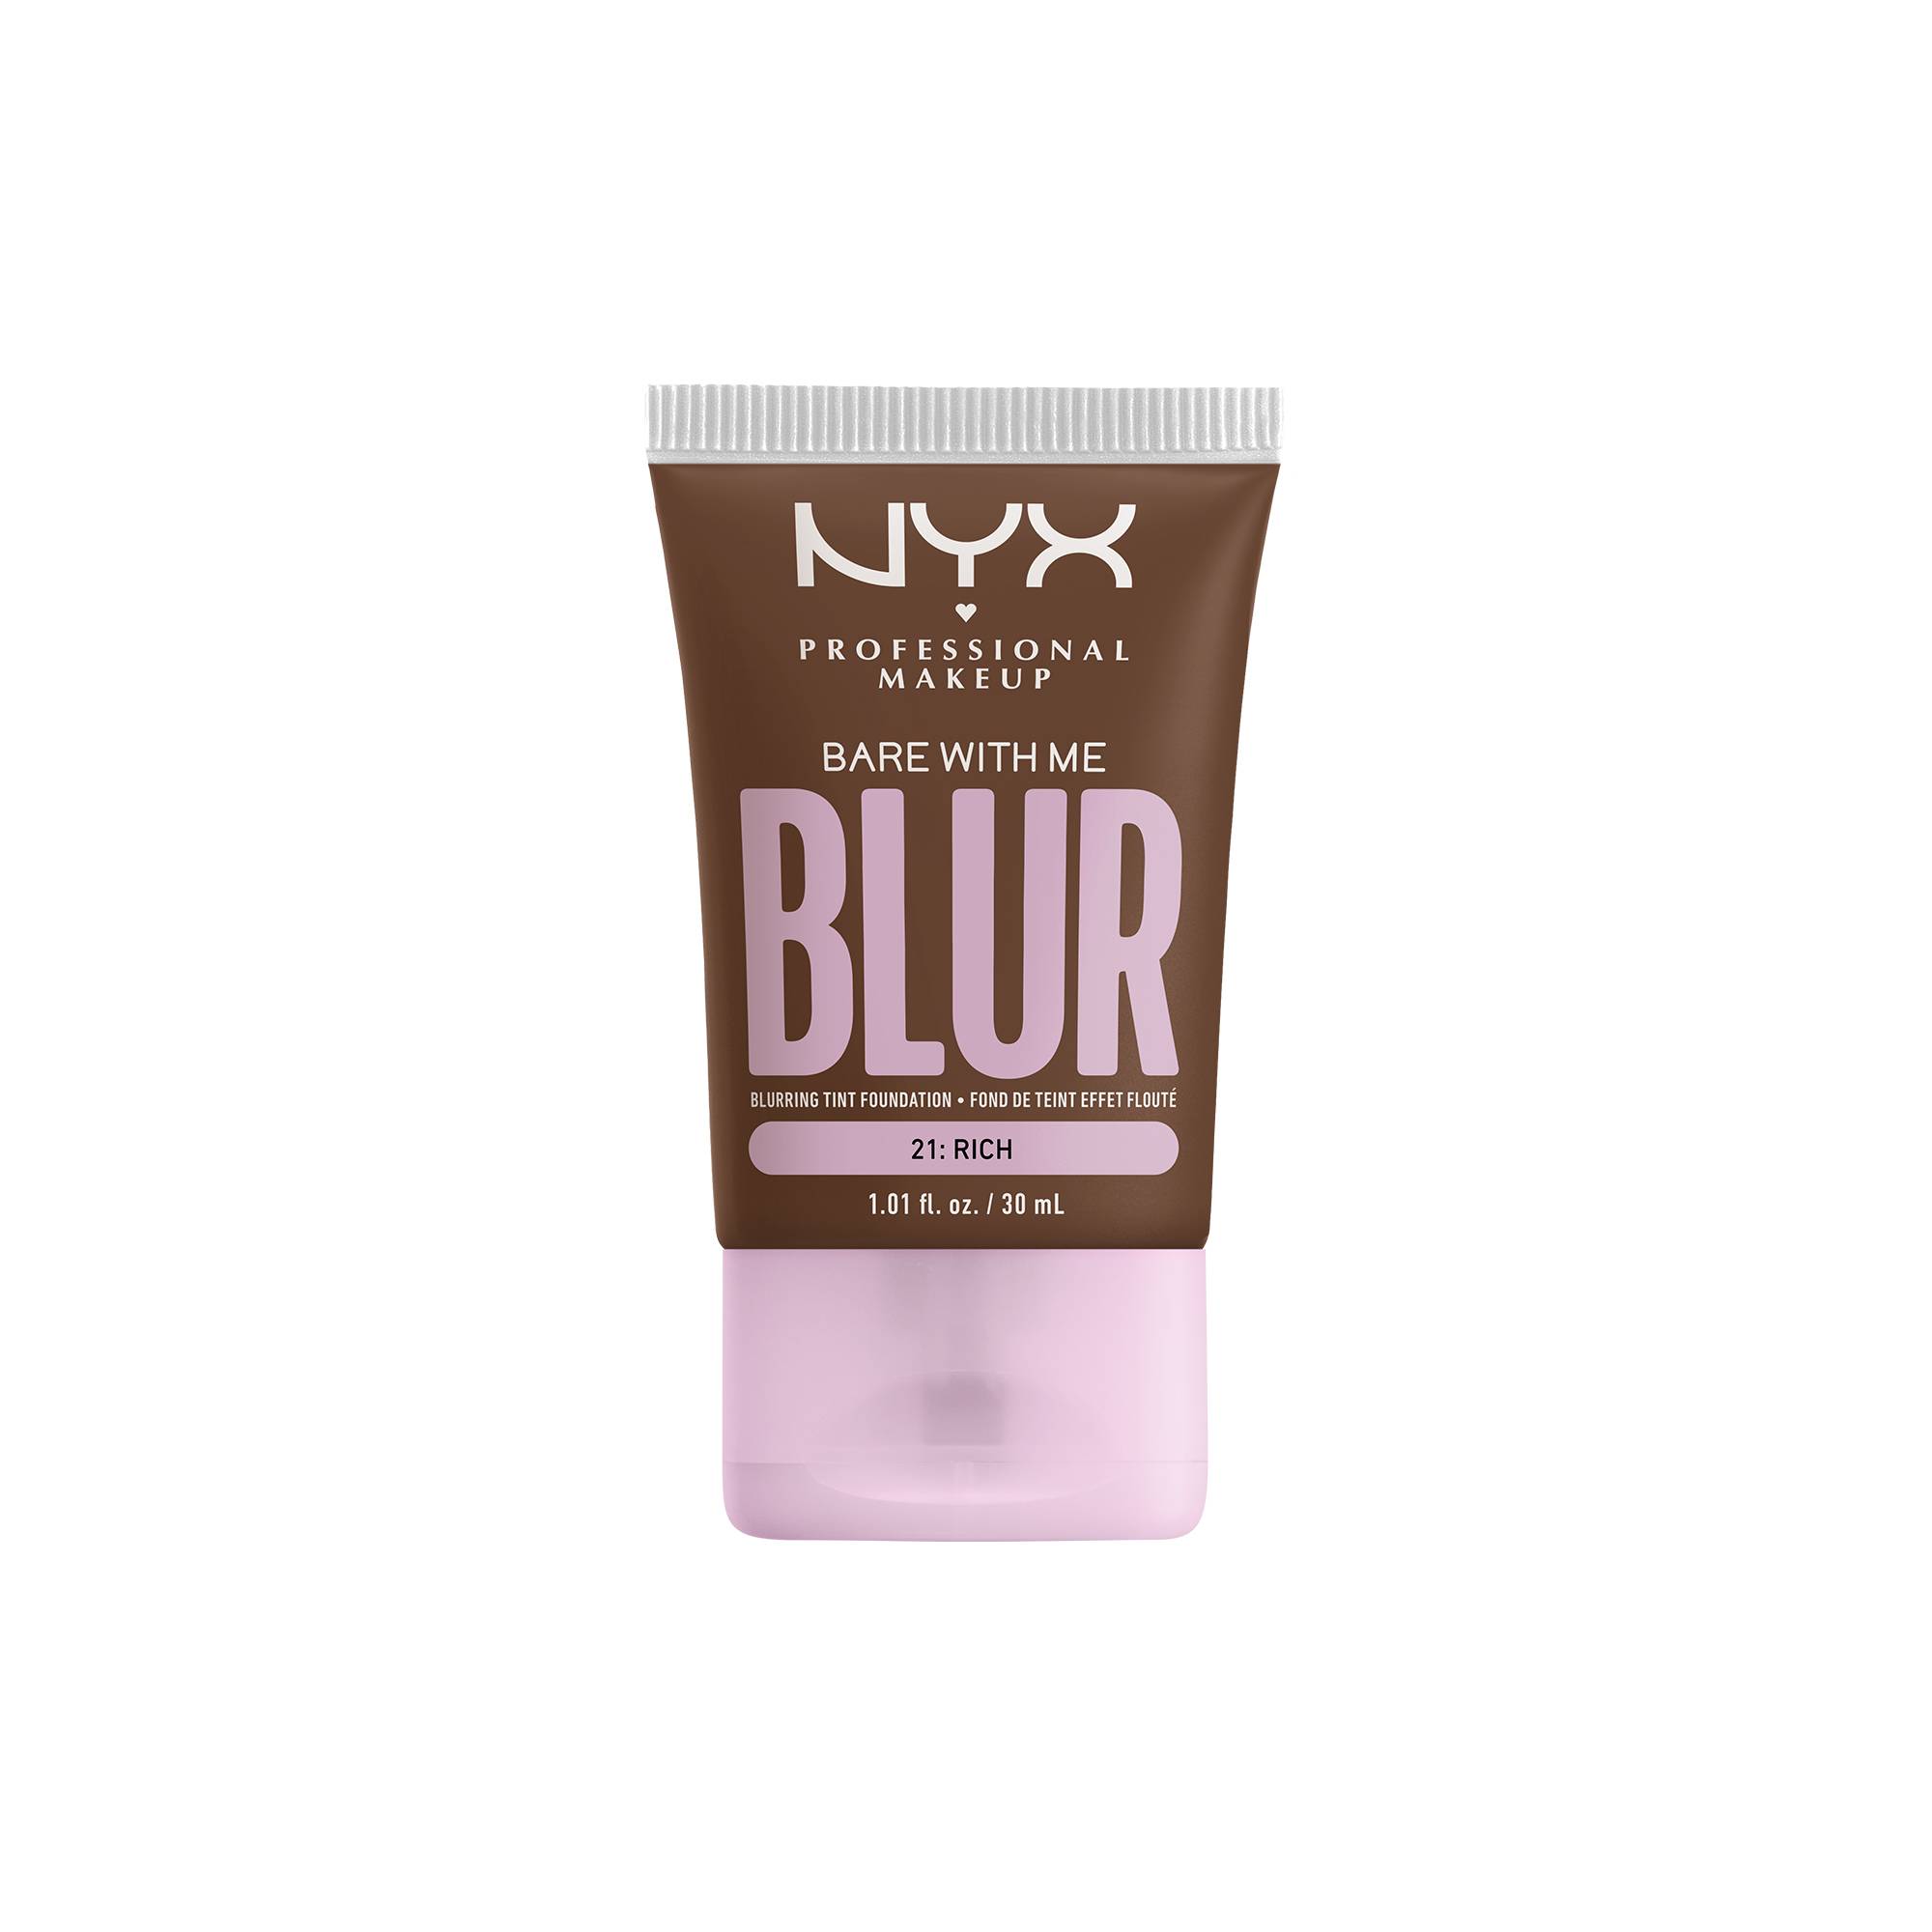 Fond de teint effet flouté Bare With Me Blur Rich de la marque NYX Professional Makeup - 1